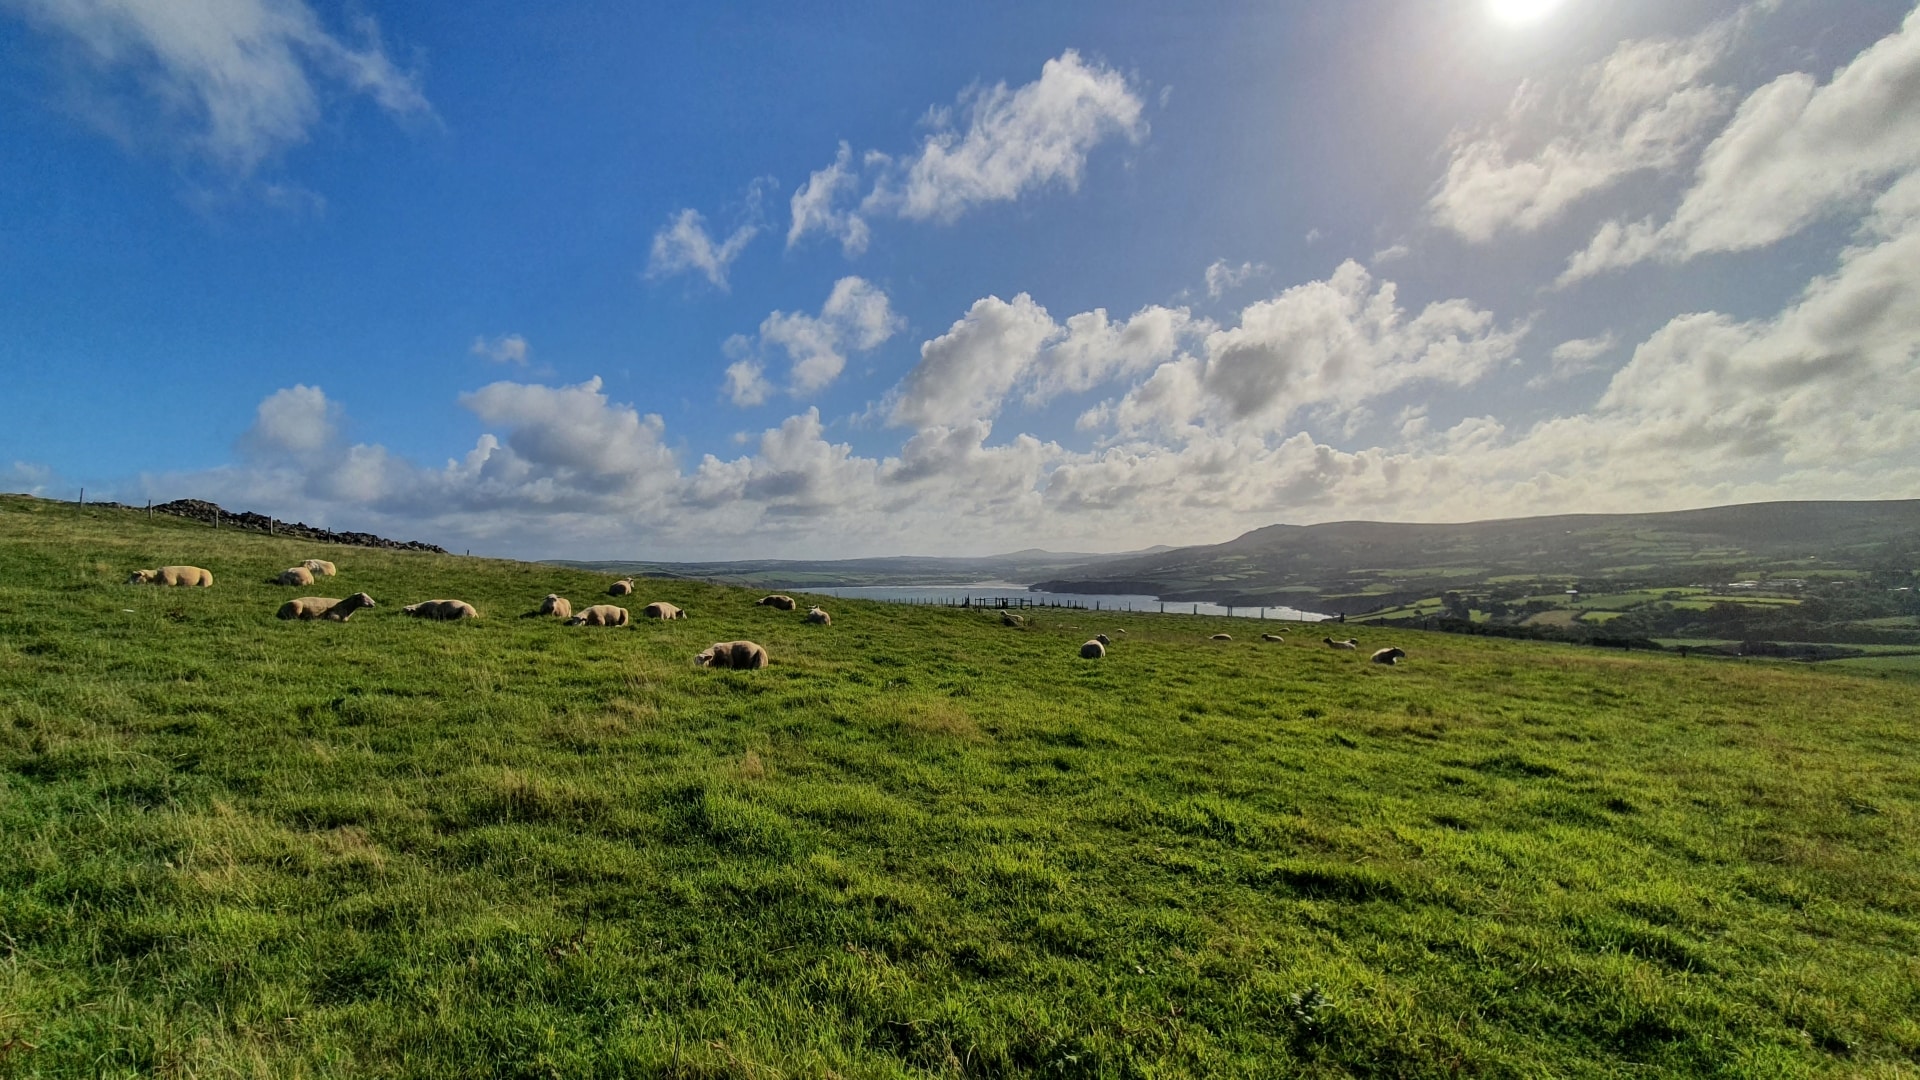 Dinas Head Coastal Walk - Sleeping Sheep